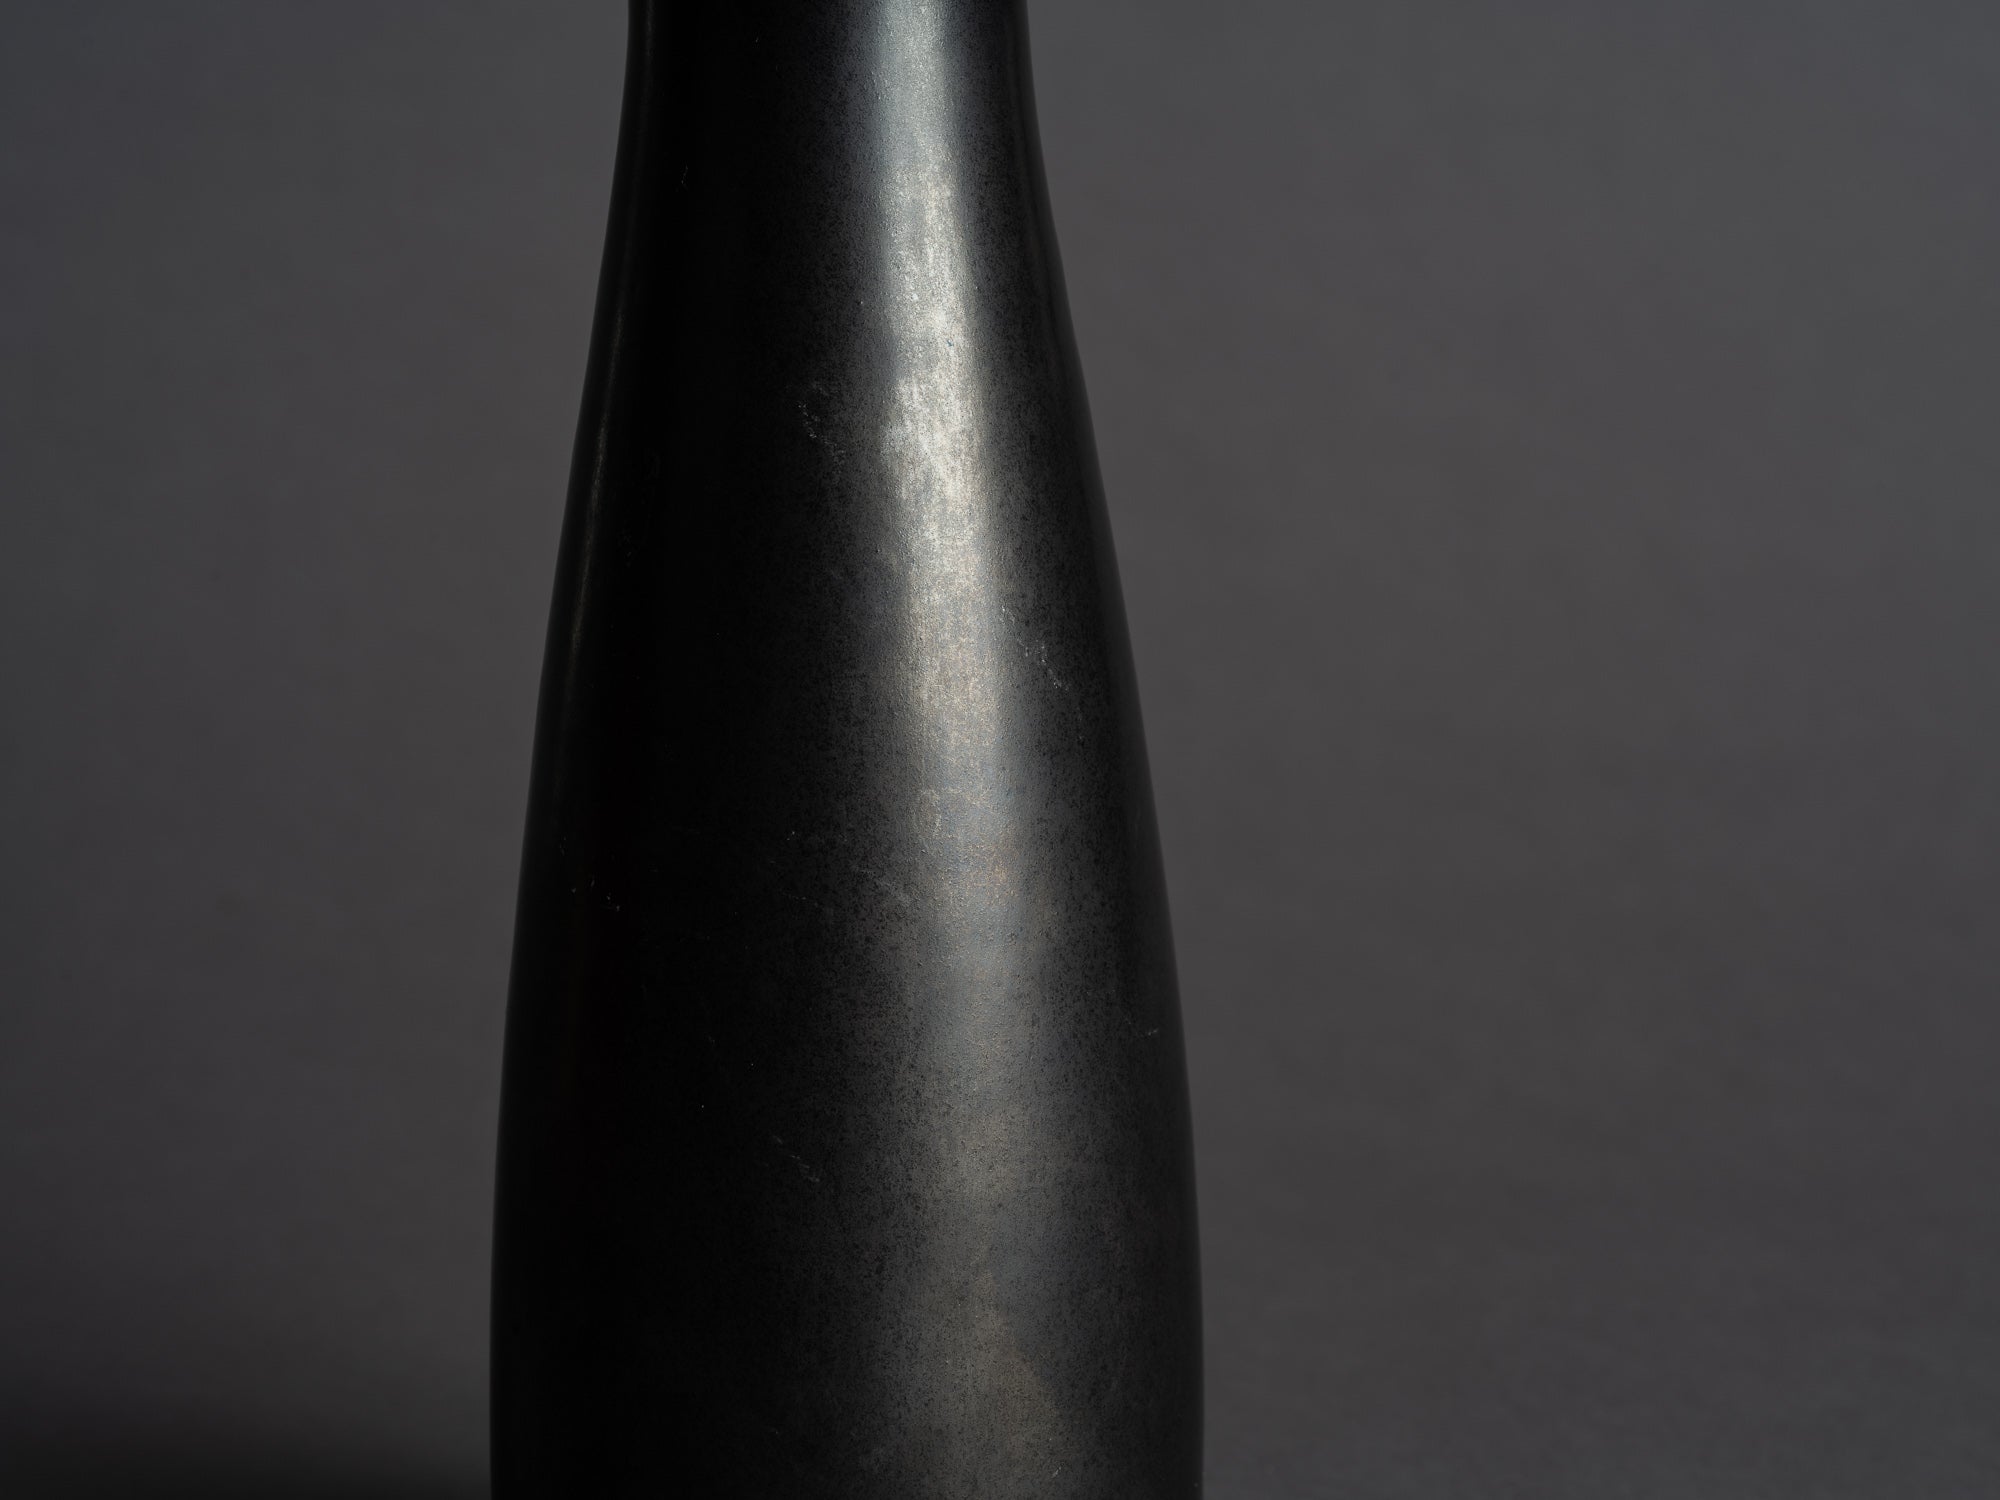 Vase biomorphique d'Otto Gerharz pour Otto Keramik, Allemagne (vers 1968)..Biomorphic freeform vase by Otto Gerharz for Otto Keramik, Germany (circa 1968)